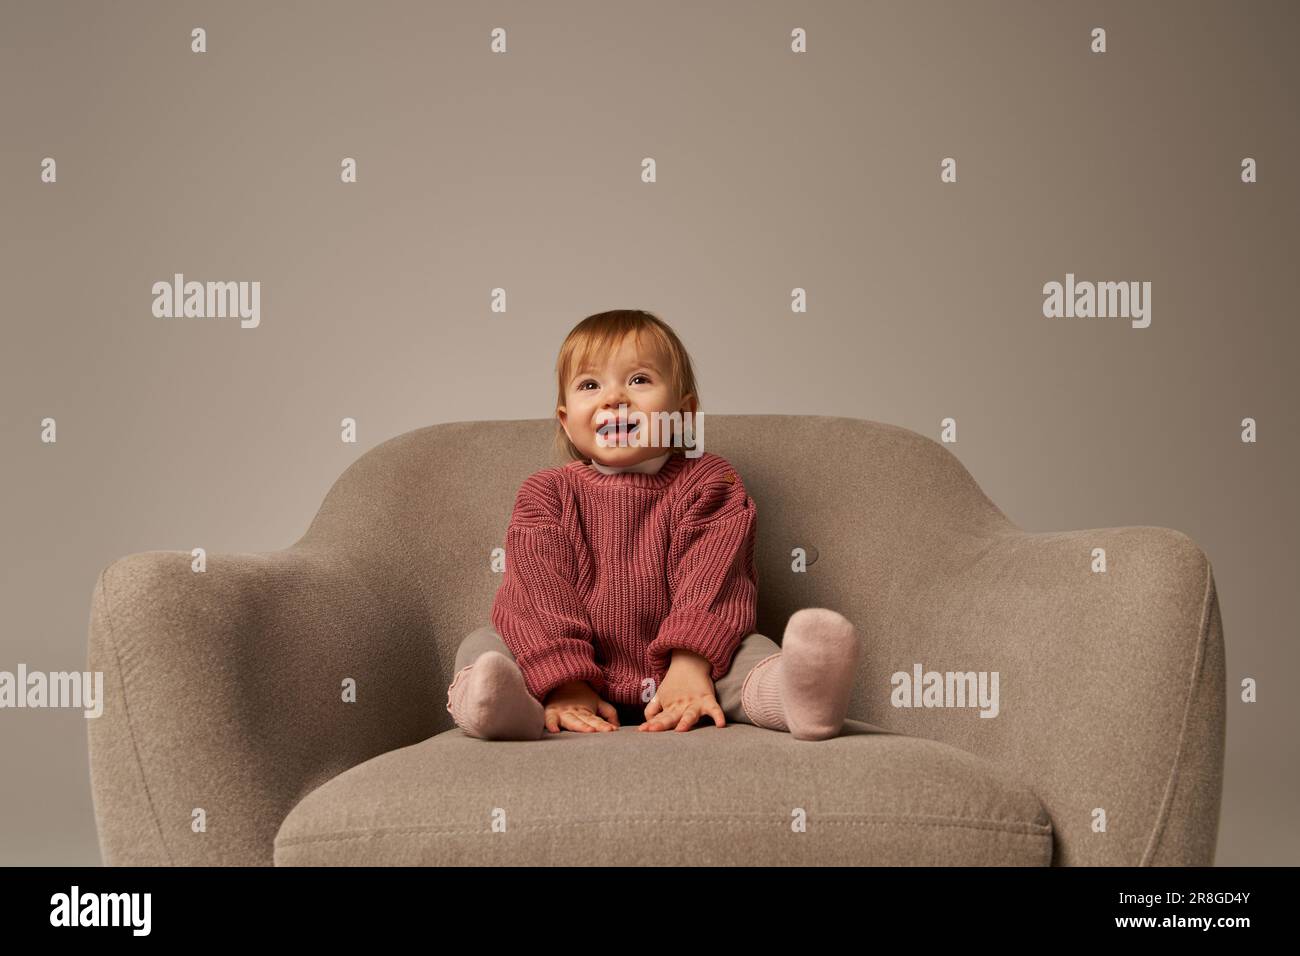 ragazza cute del bambino, toddler in abbigliamento casual seduto su comoda poltrona su sfondo grigio in studio, emozione, felicità, gioia, innocenza, piccolo chil Foto Stock